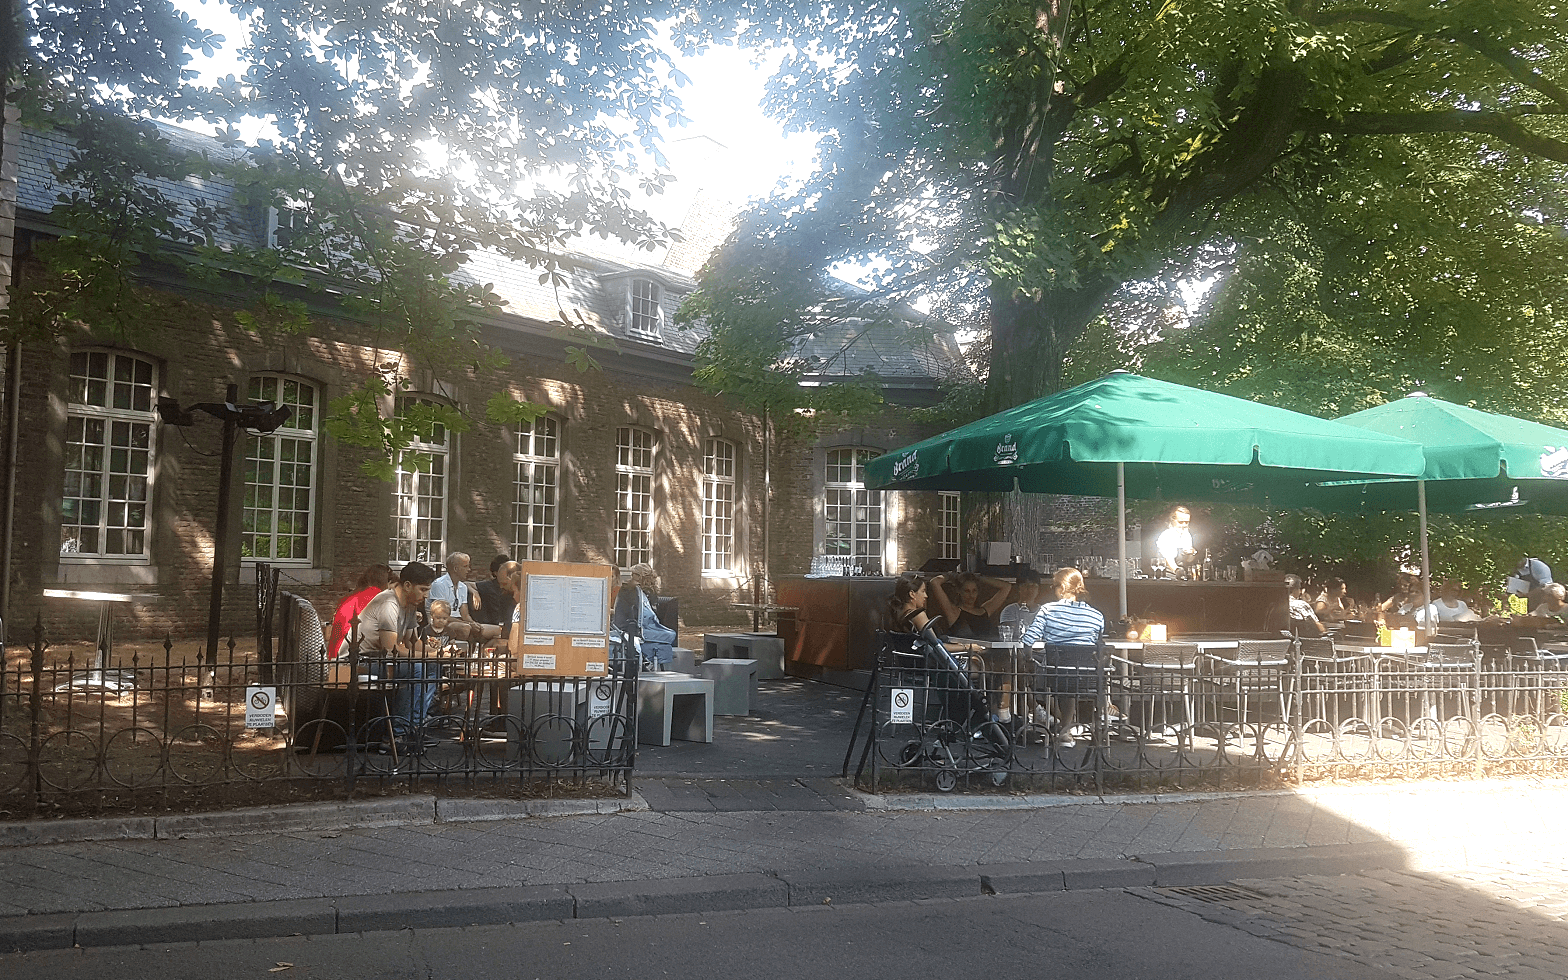 Maastricht-city-guide-cafe-sjiek-image-1.width-1986 (1).png